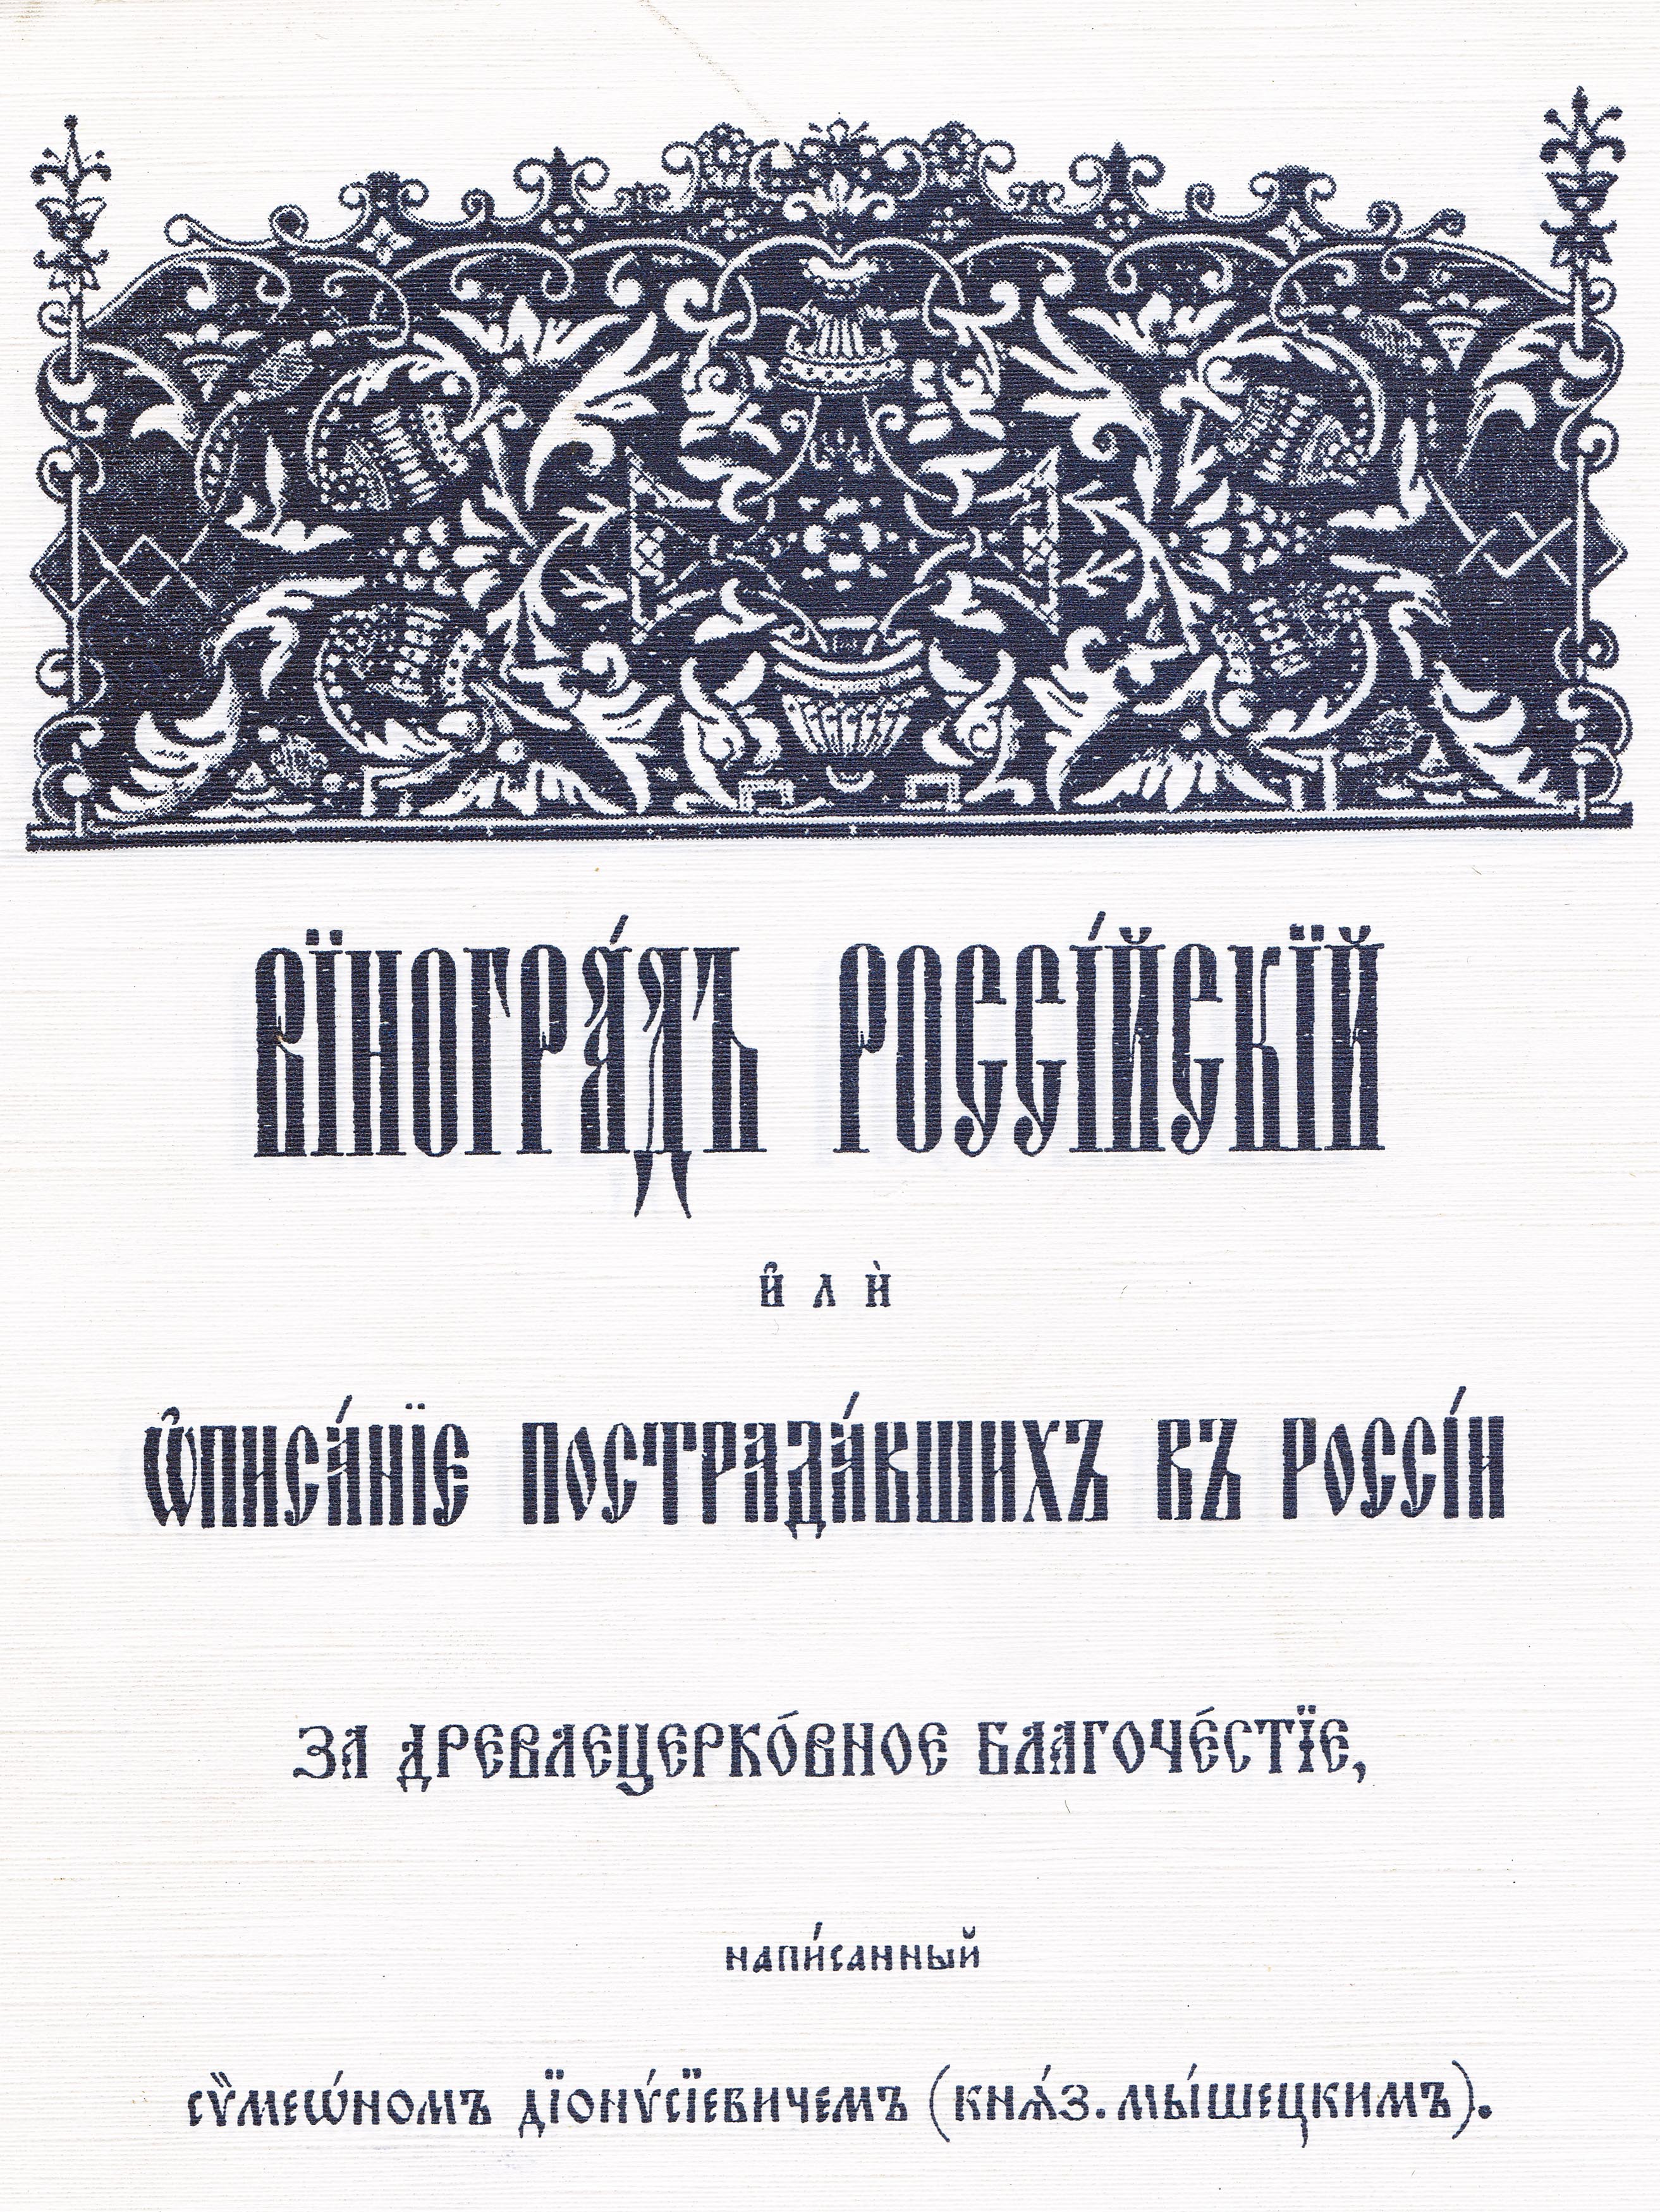 Обложка репринтного издания книги «Виноград российский»